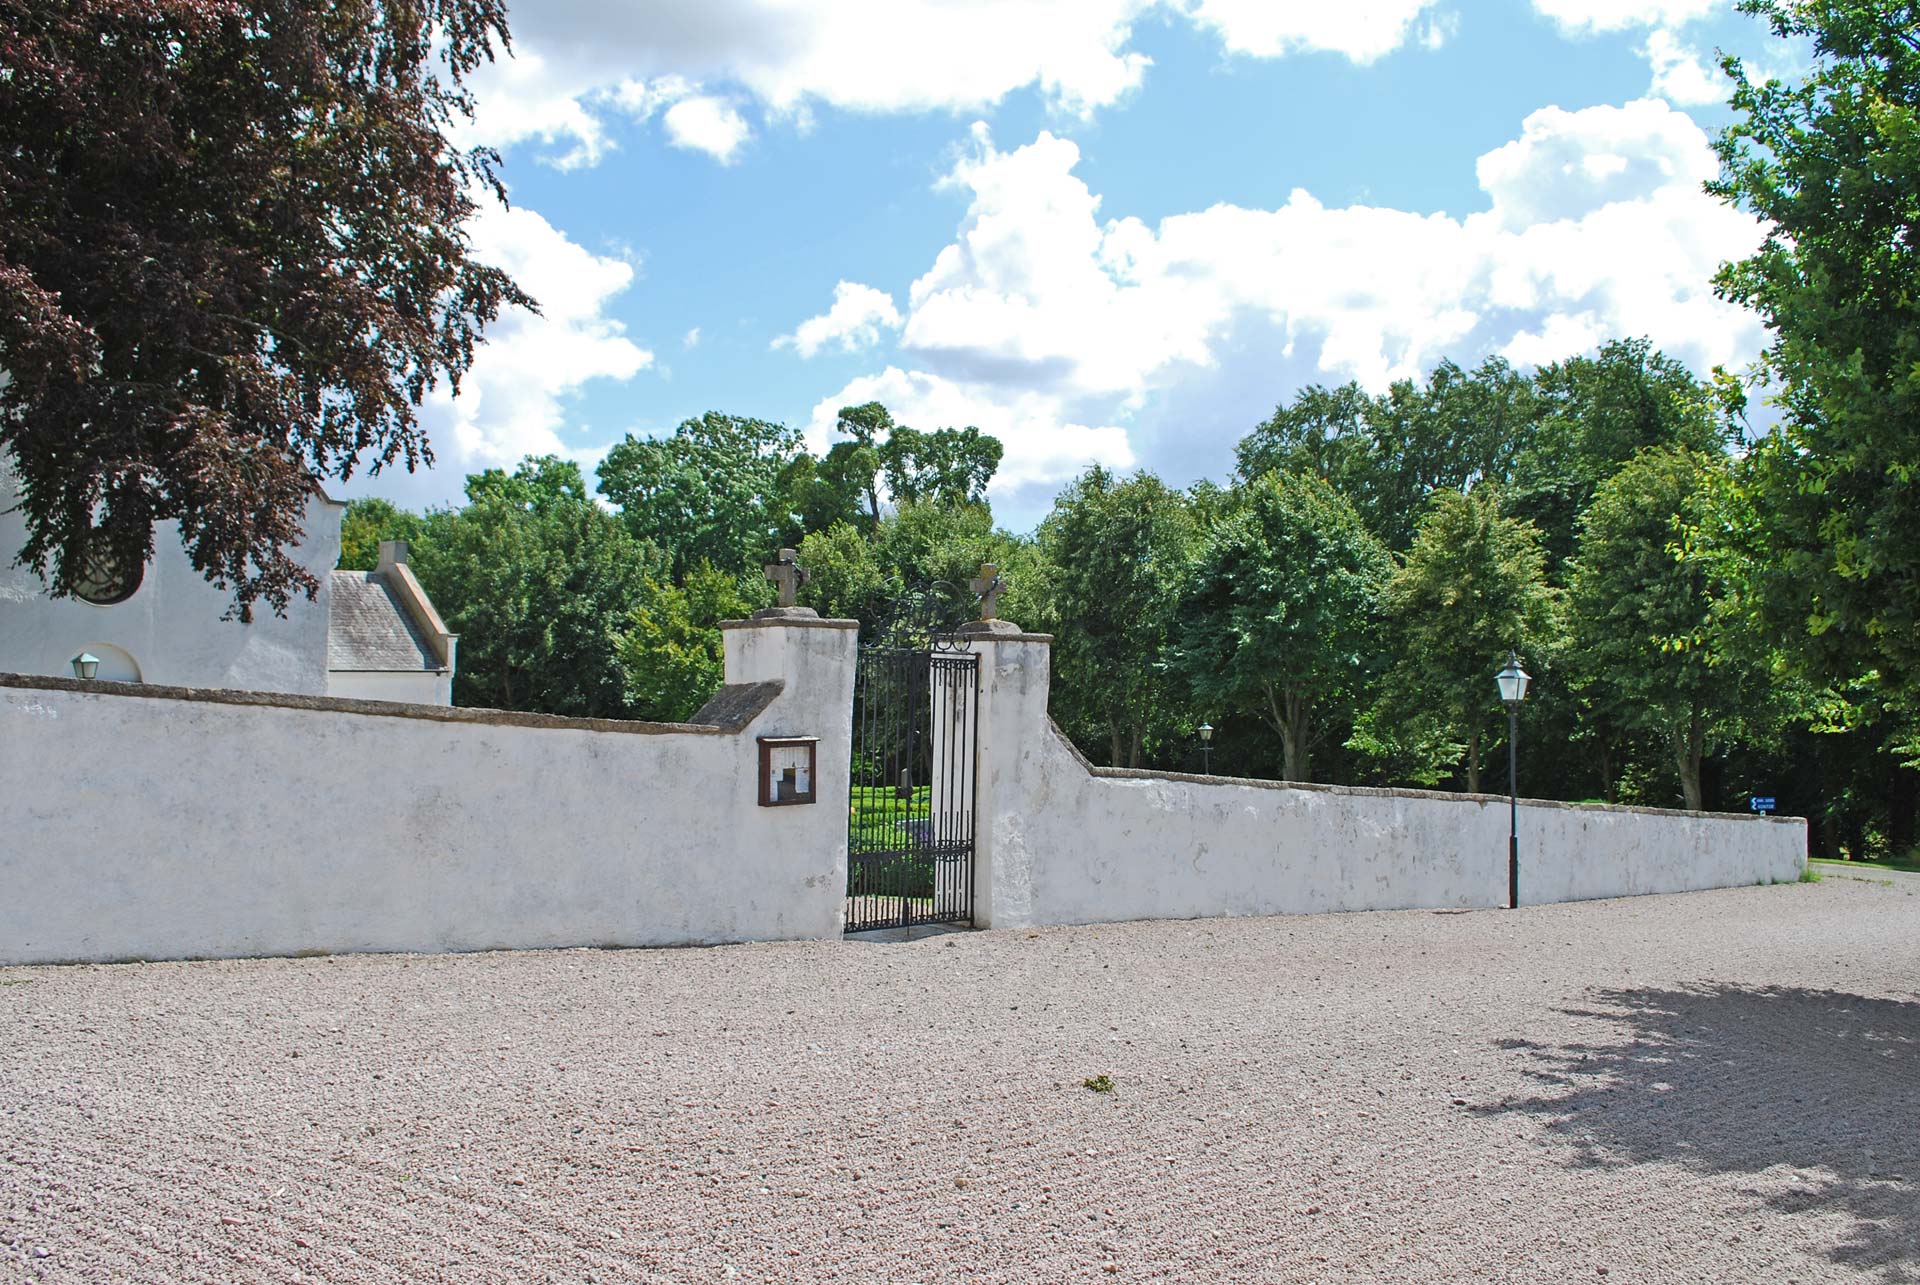 Muren vid Tosterups kyrka, vitkalkad mur med svart grind som leder in till kyrkan och kyrkogården